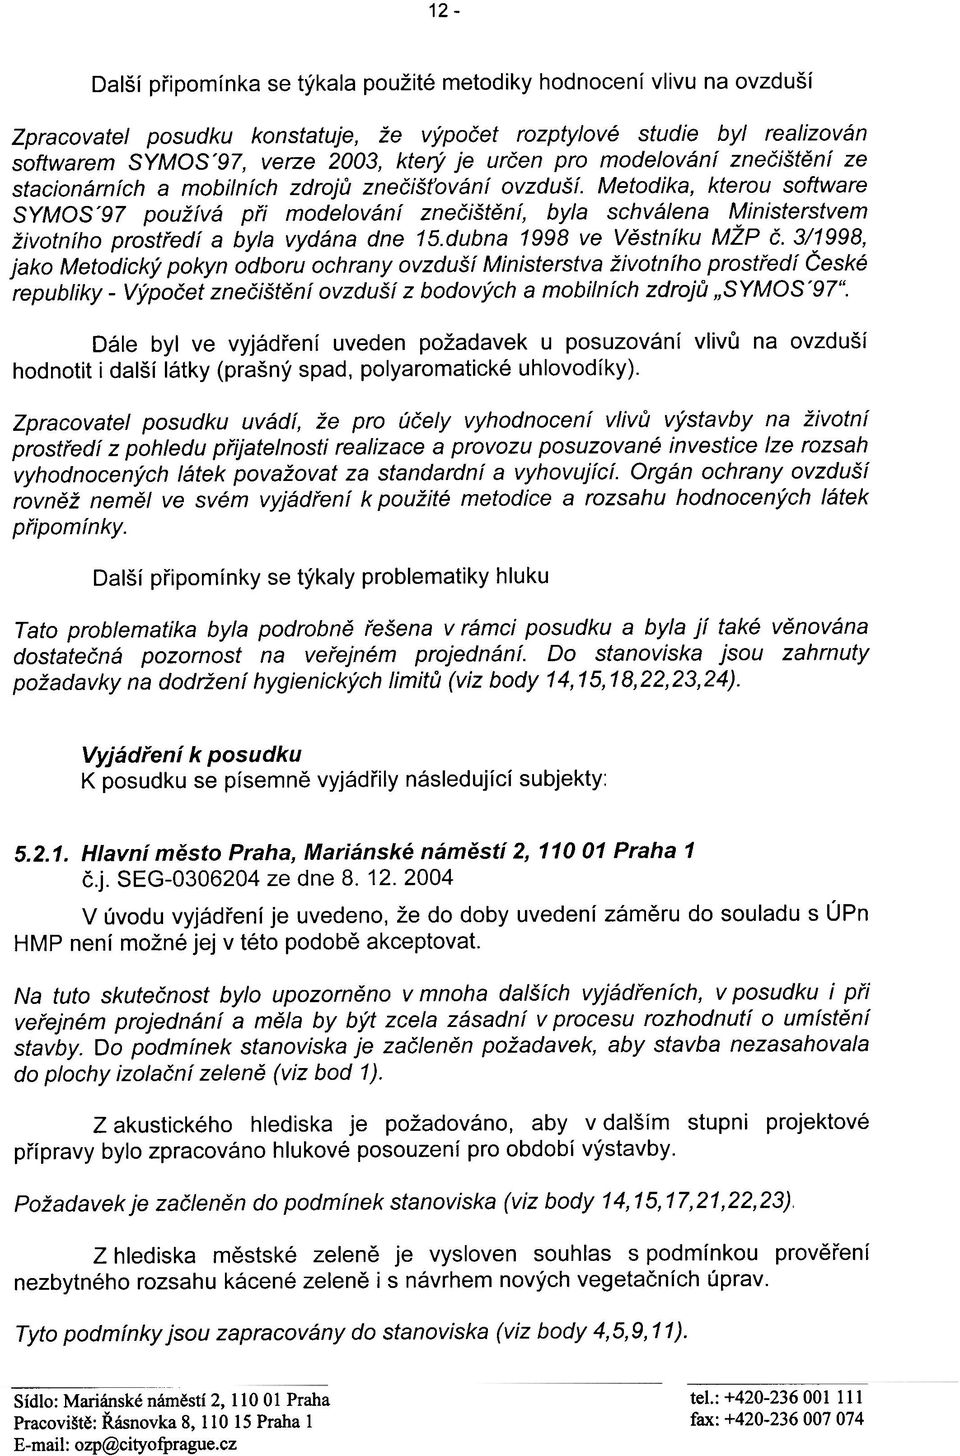 Metodika, kterou software SYMOS'97 používá pøi modelování zneèištìní, byla schválena Ministerstvem životního prostøedí a byla vydána dne 15.dubna 1998 ve Vìstníku MŽP È.